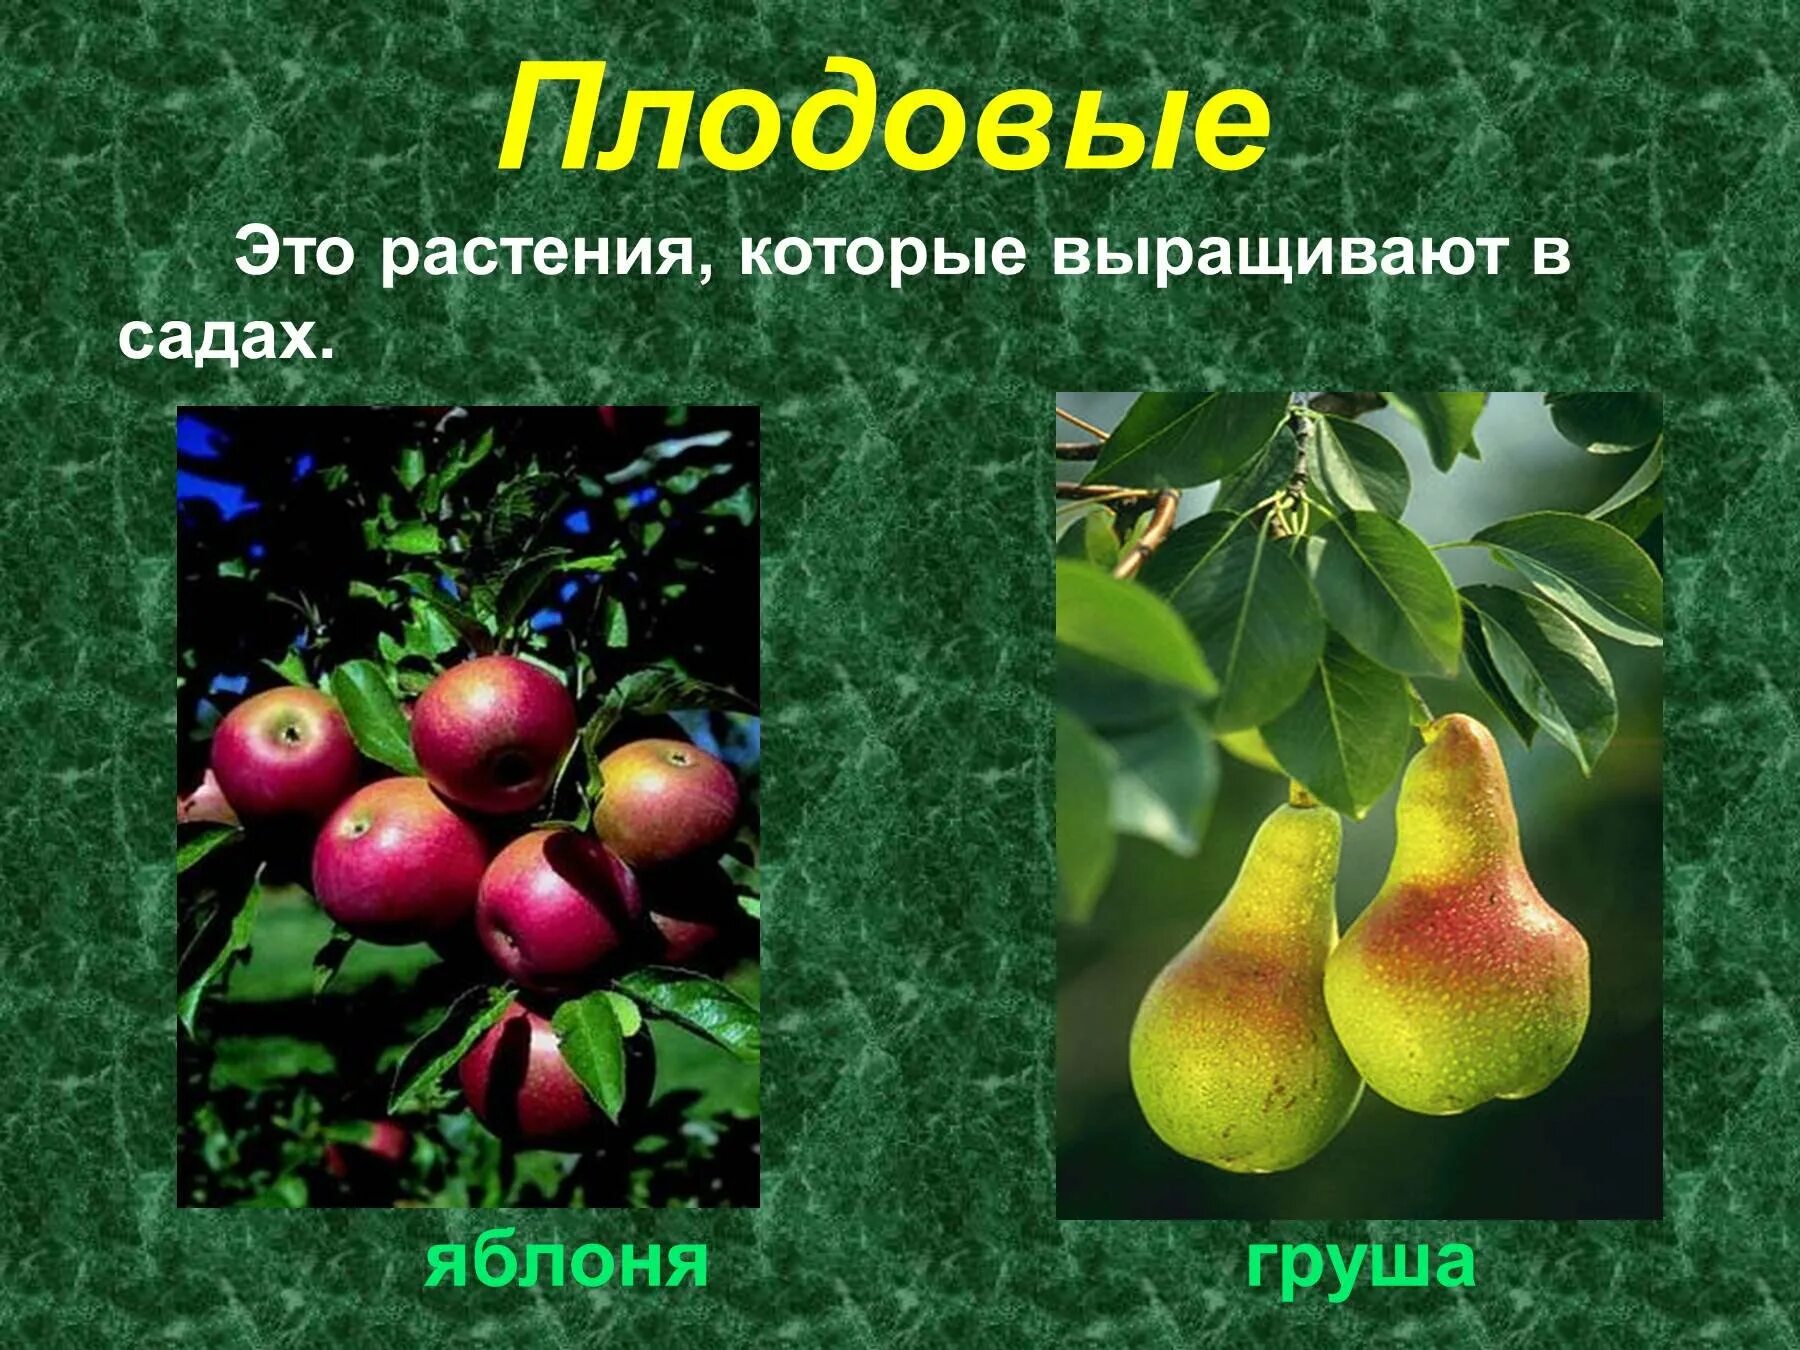 2 плодовых растений. Культурные растения. Культурные растения сада. Плодовые растения названия. Растения сада: яблоня, груша.